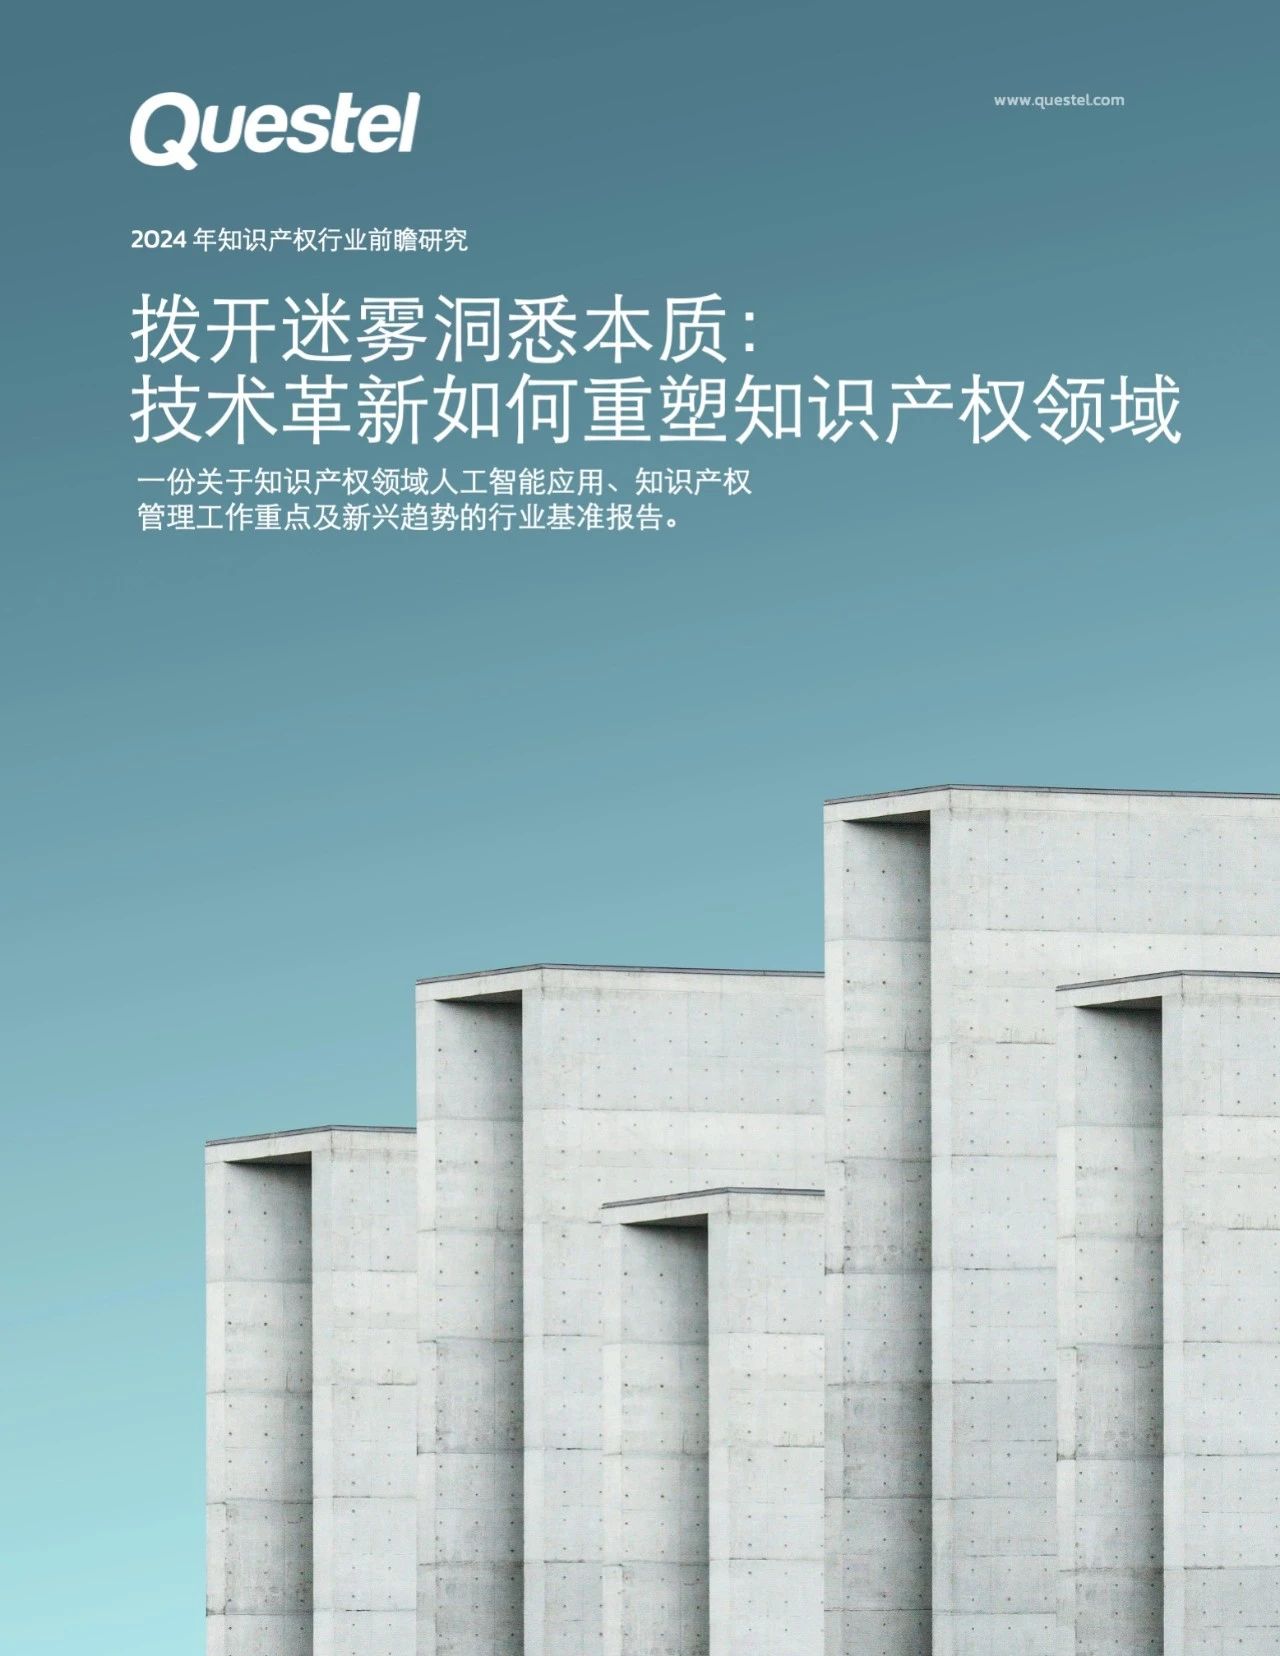 中文版发布 | 2024年知识产权行业前瞻研究报告